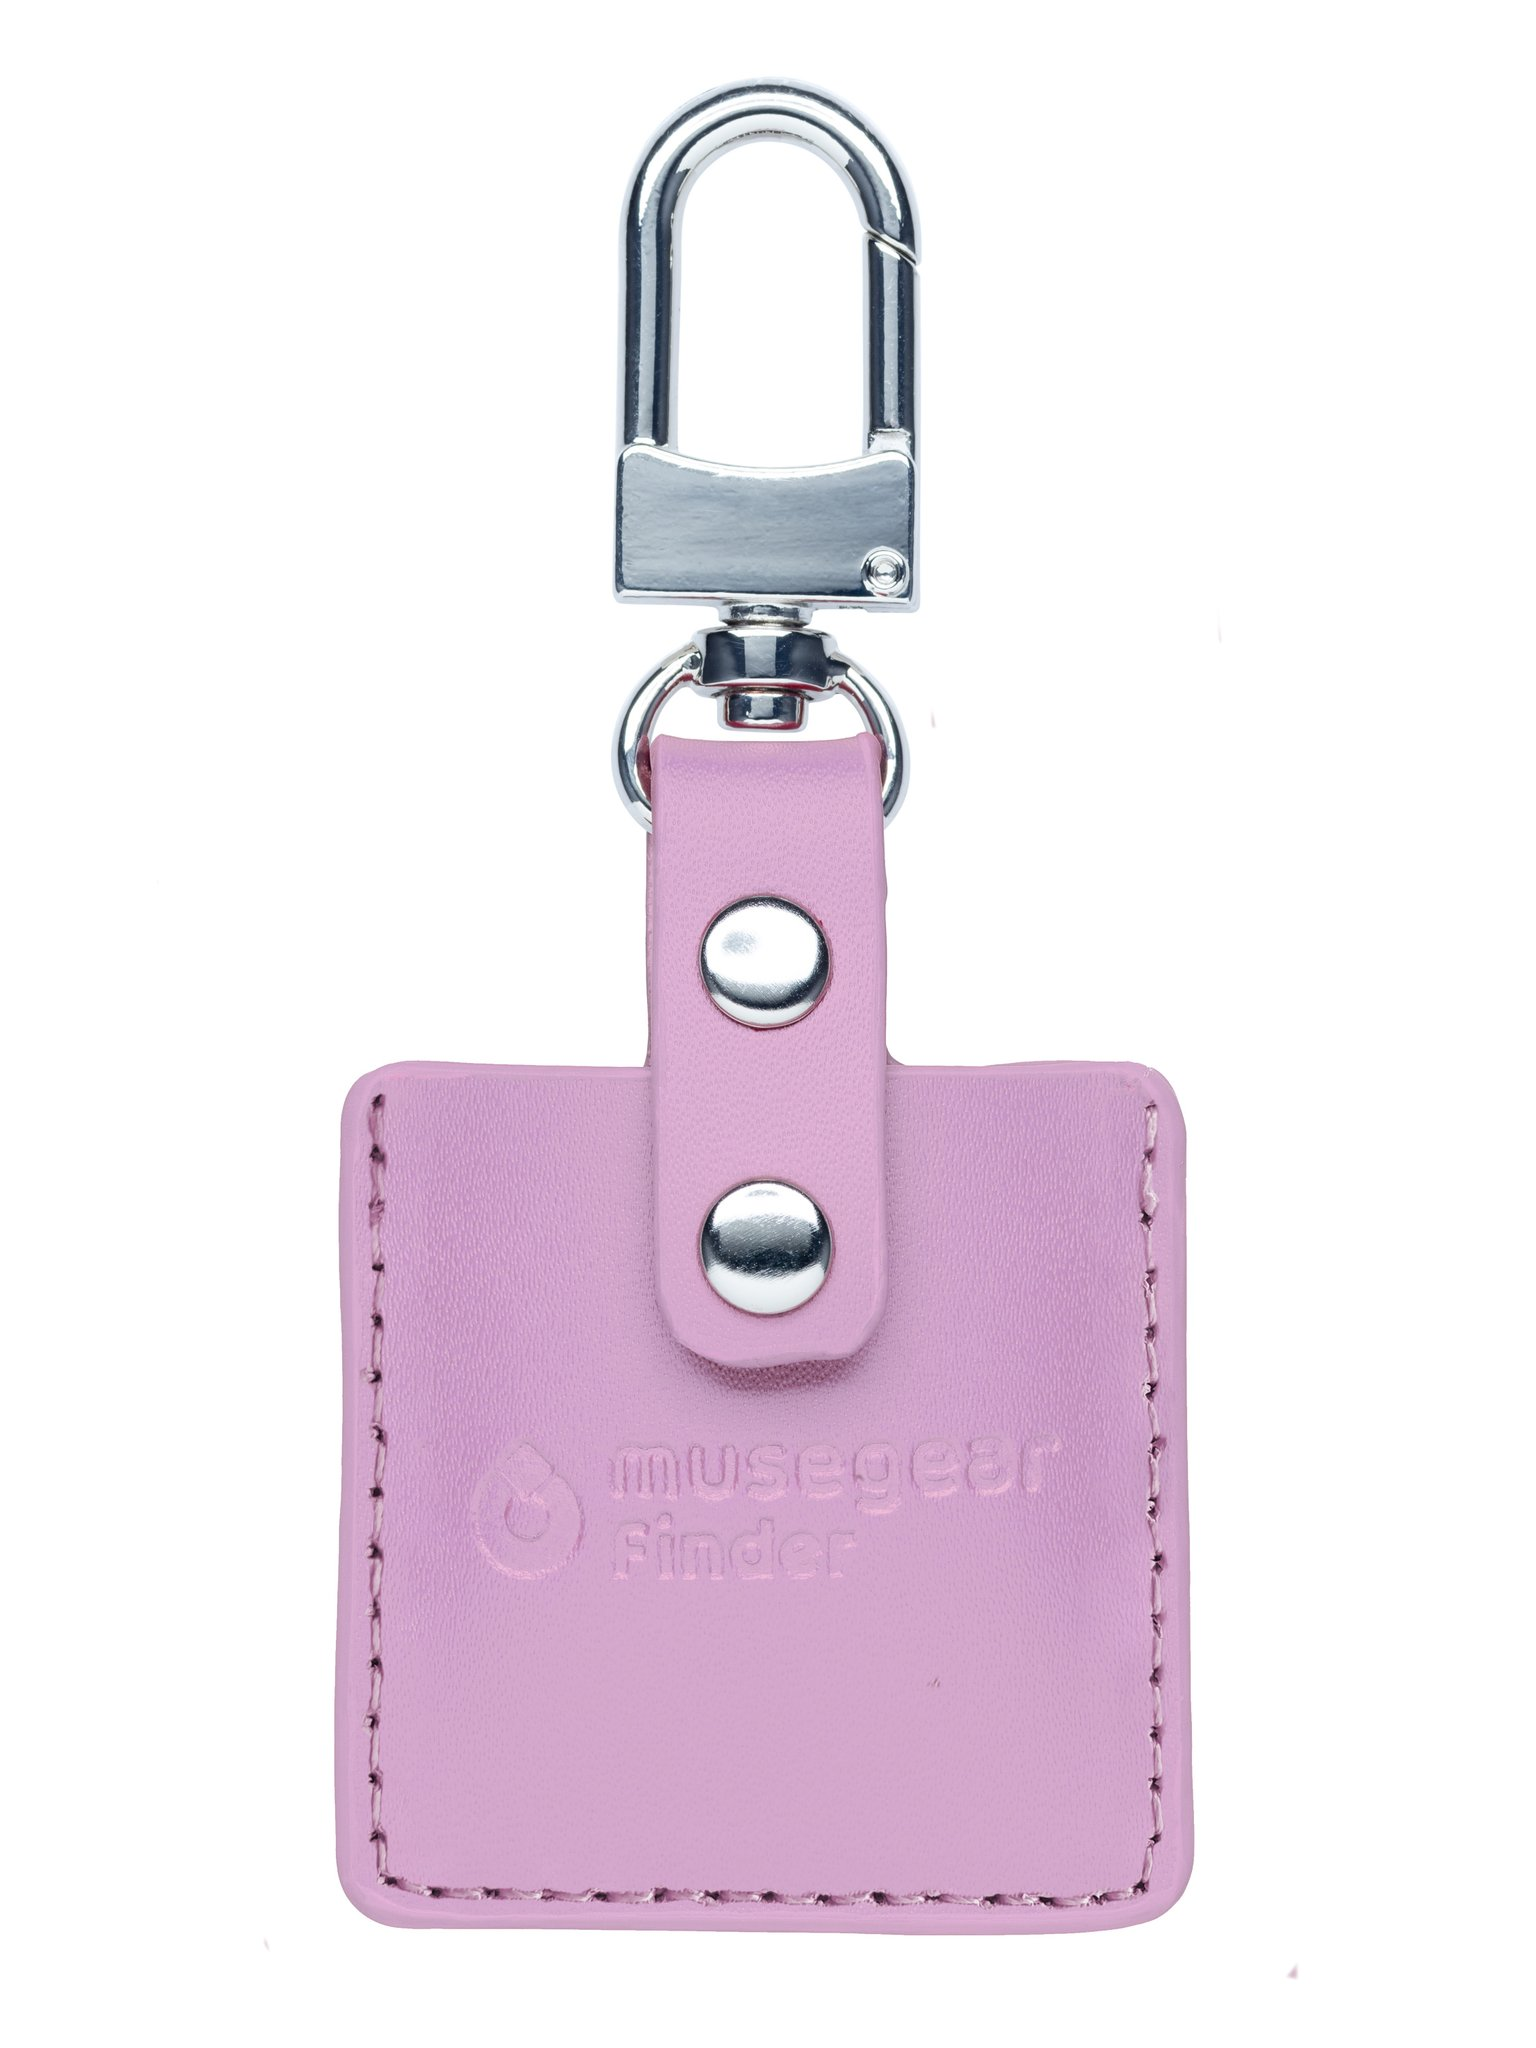 MUSEGEAR App Schlüsselfinder mit Bluetooth aus Bluetooth Schlüsselfinder Deutschland